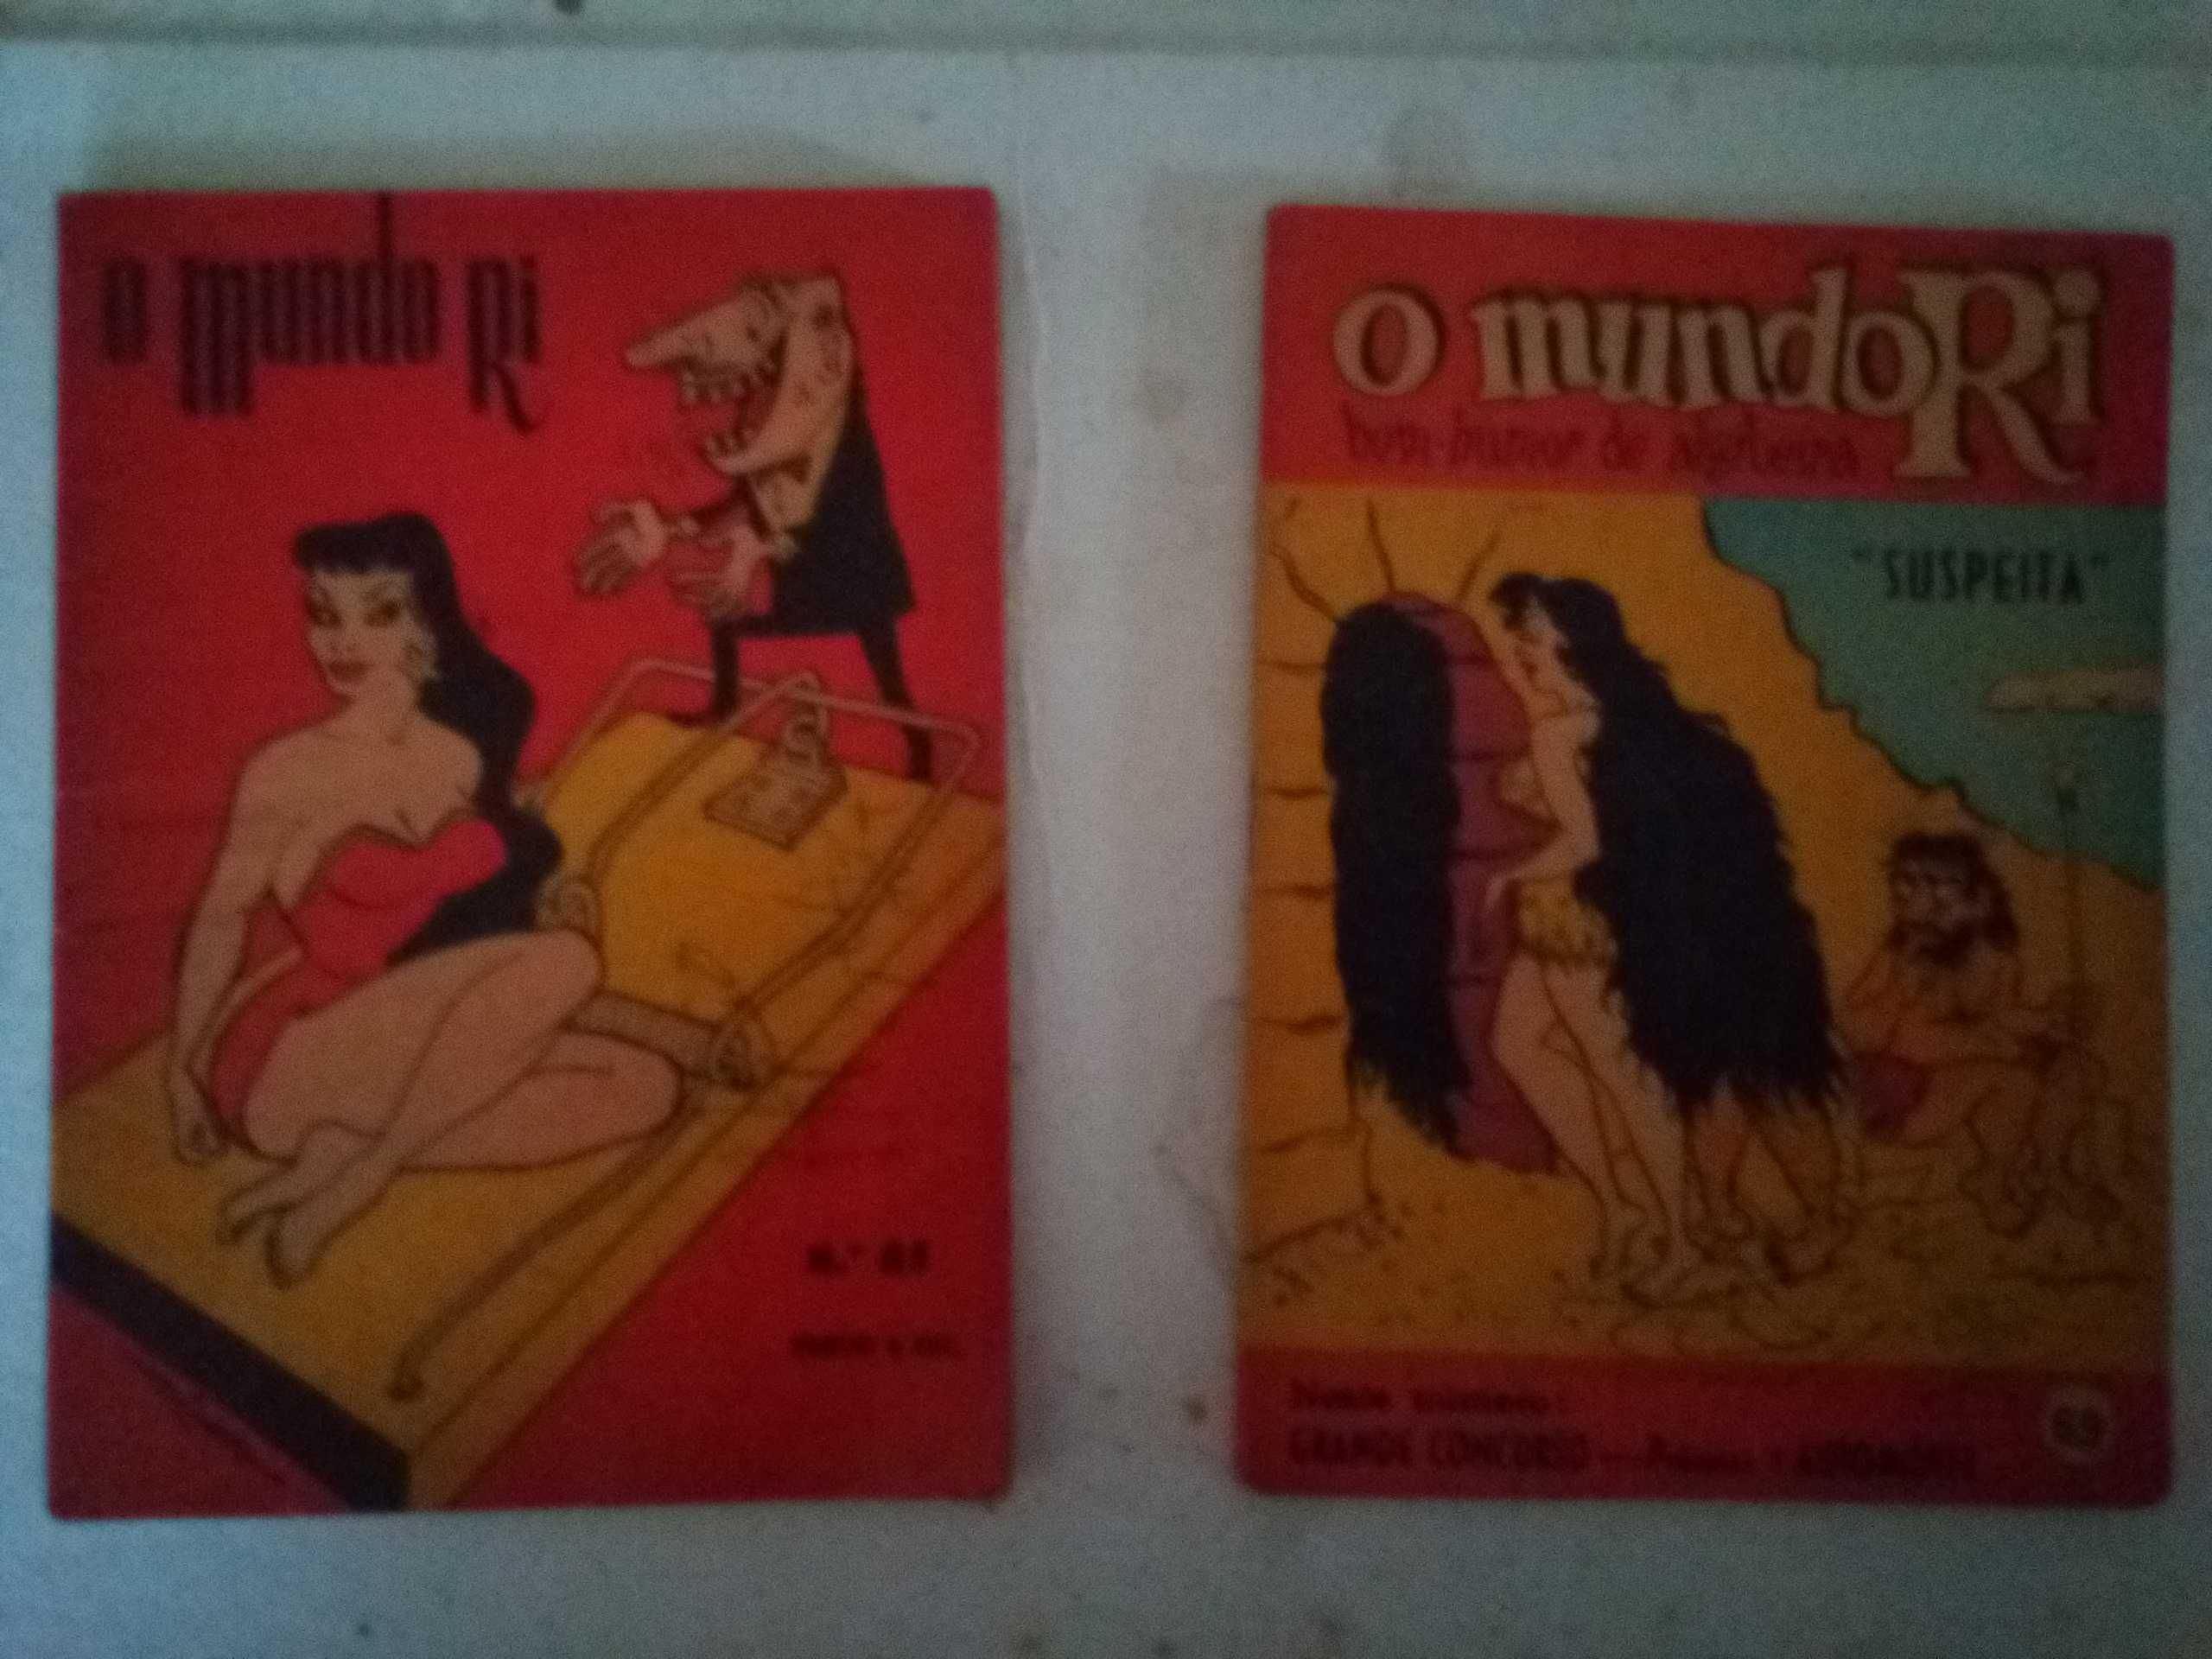 revistas antigas dos anos 50/60/70 cómico/erótico vilhena etc